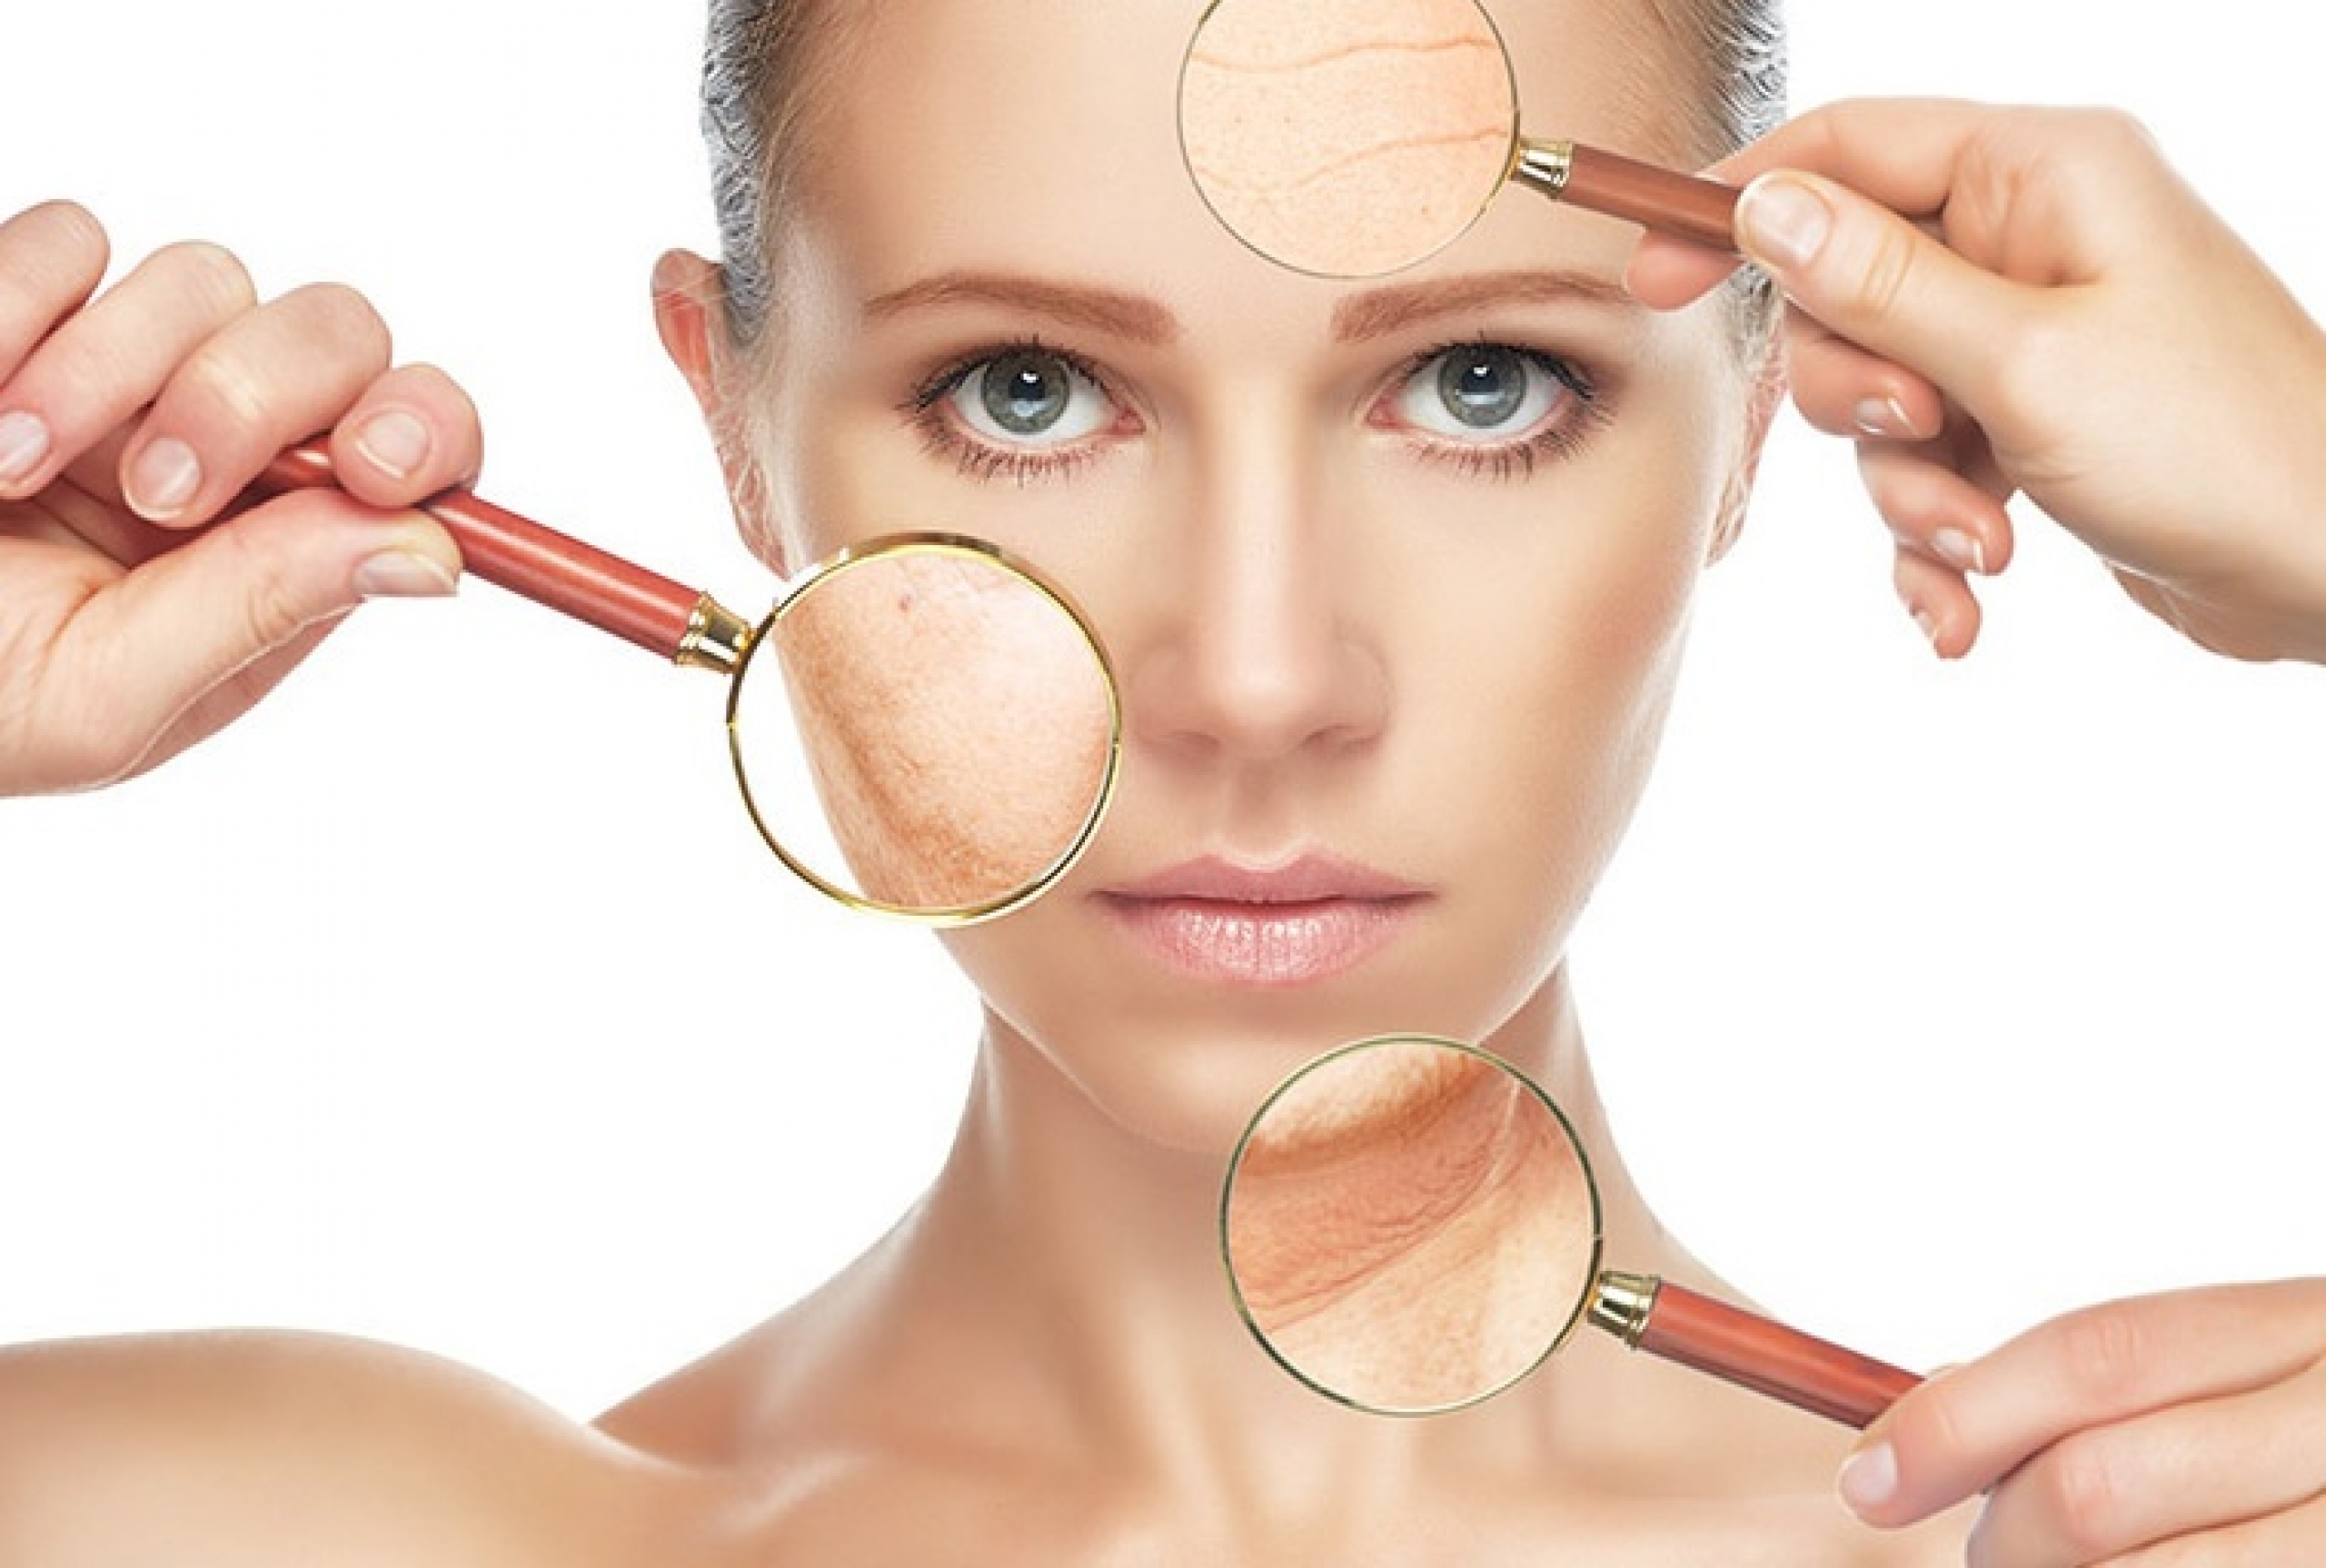 BDR: новая процедура для омоложения кожи лица